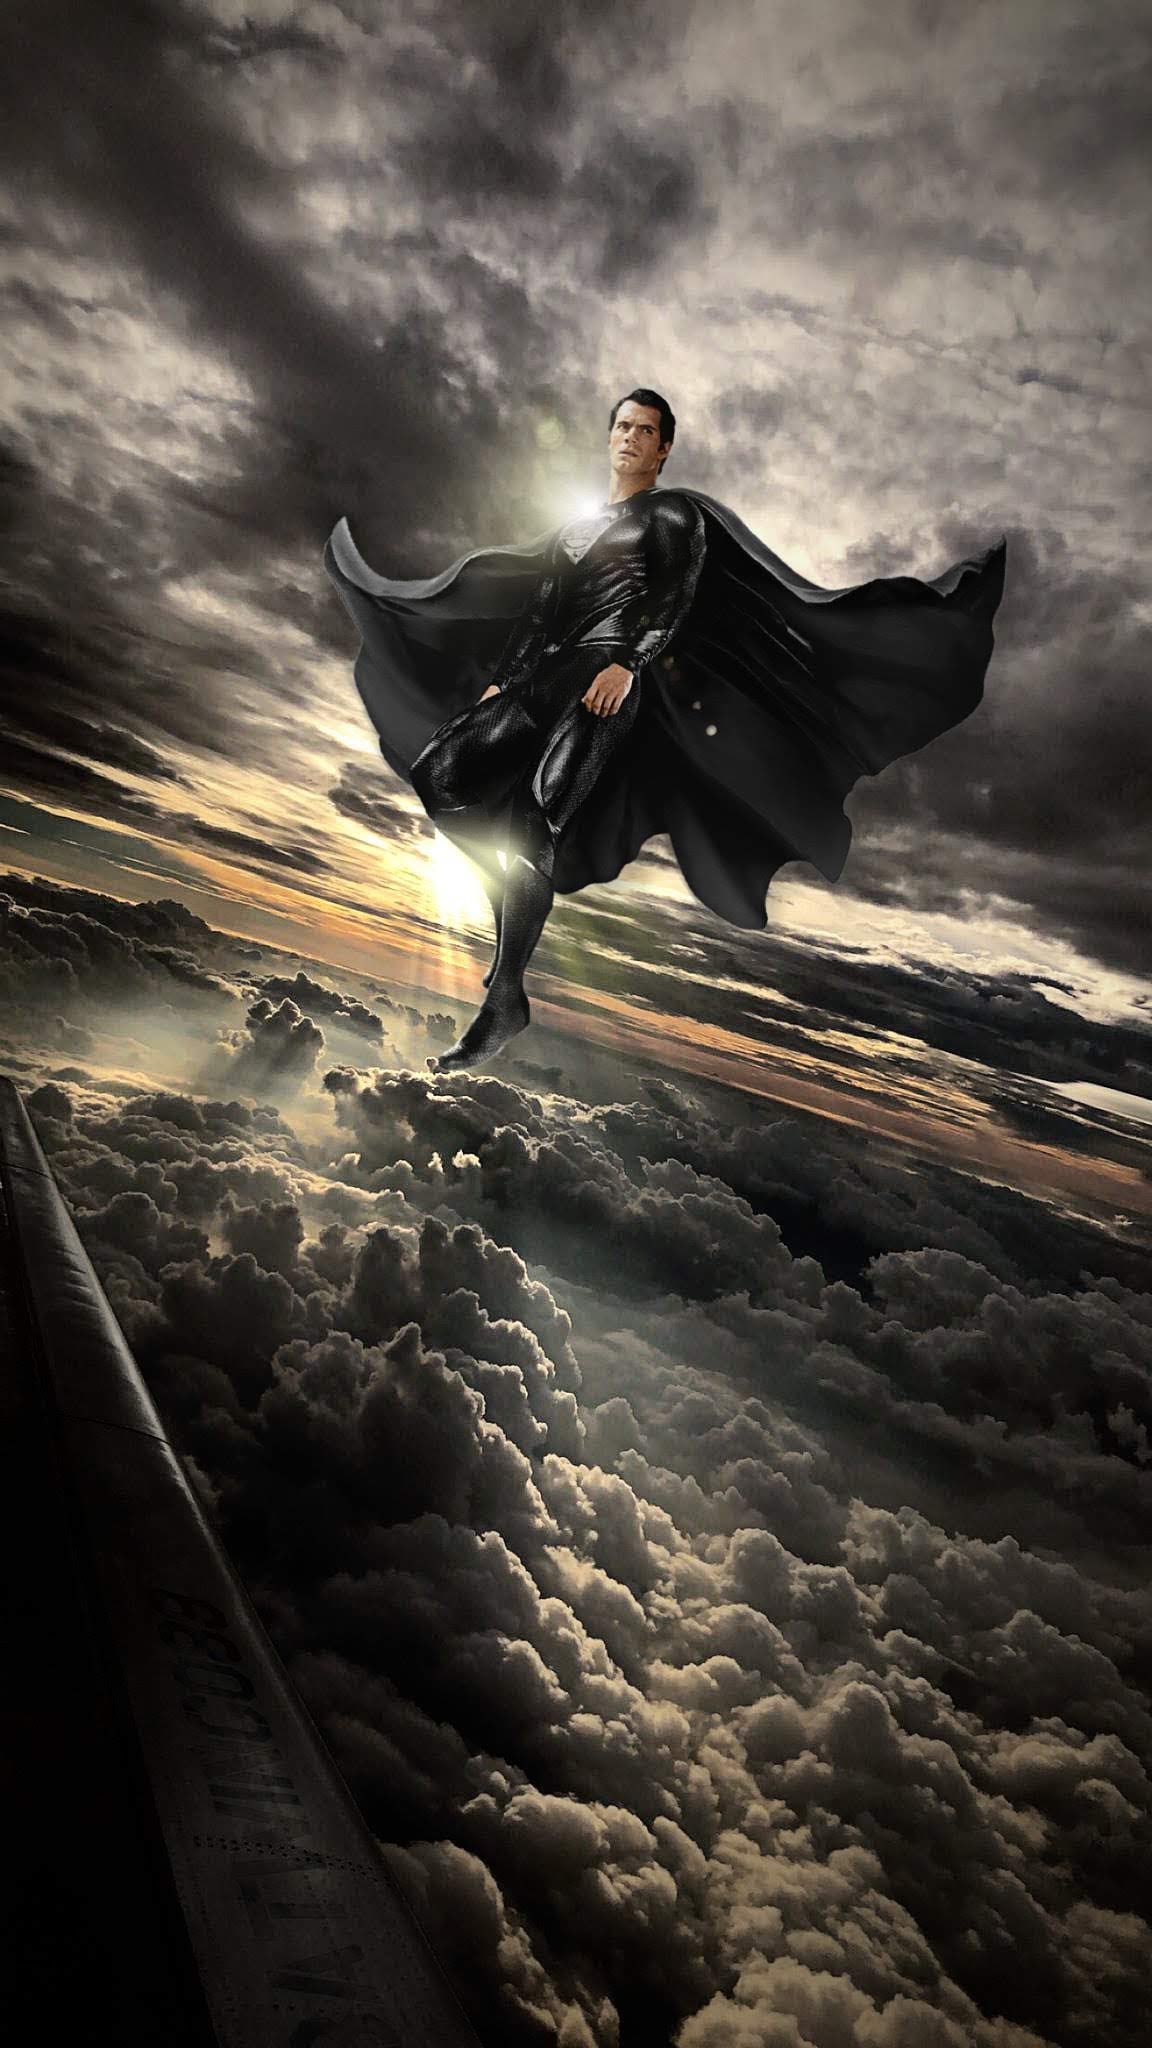 Henry Cavill as Superman Wallpaper by nickelbackloverxoxox on